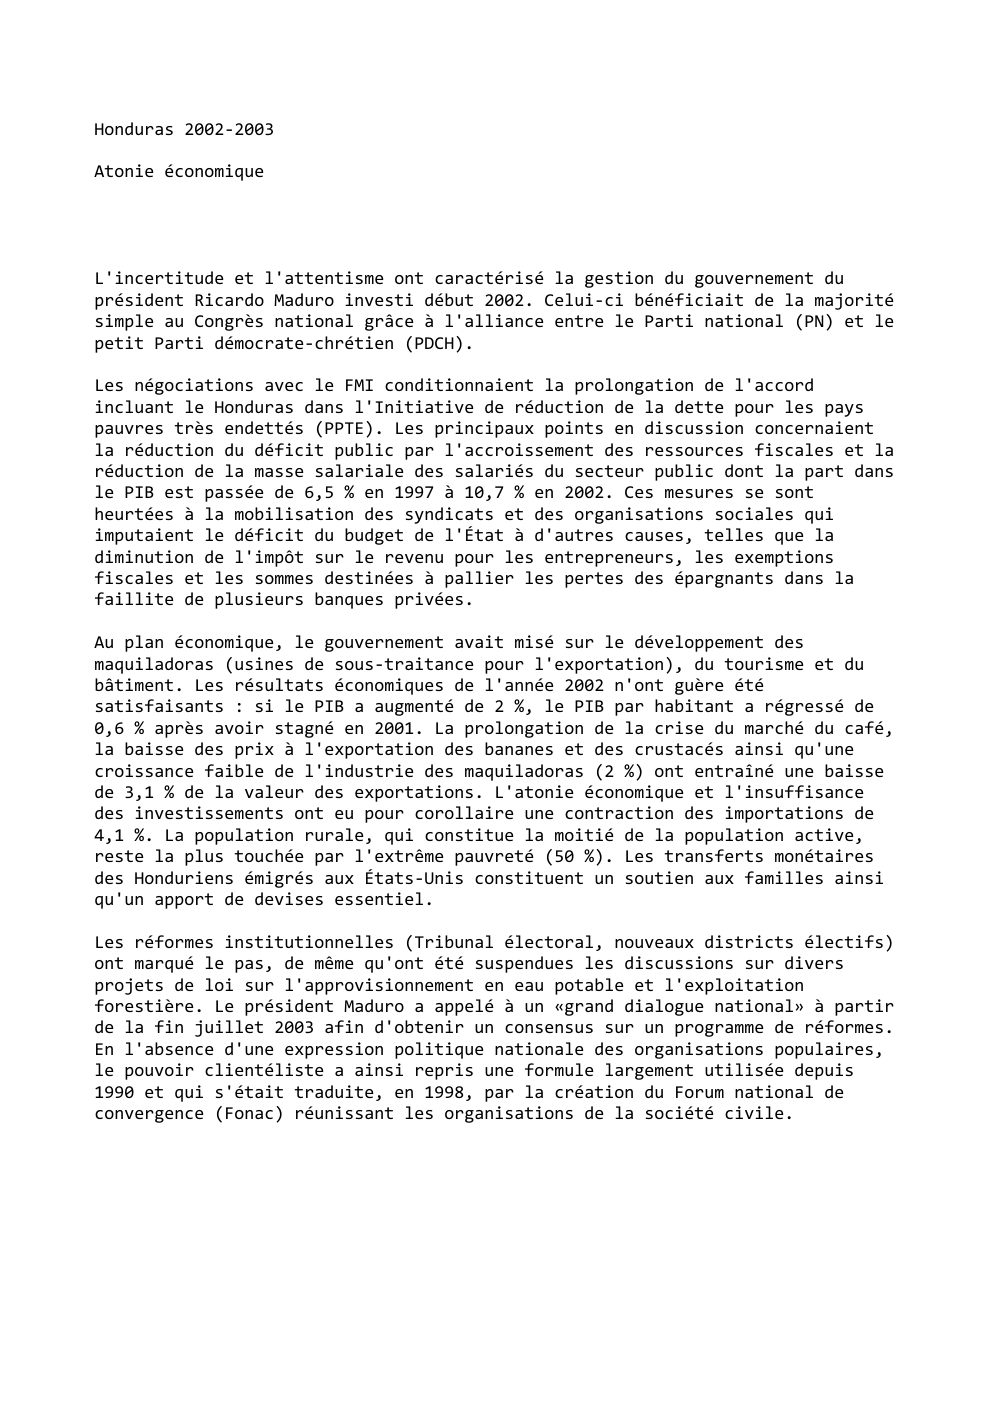 Prévisualisation du document Honduras 2002-2003
Atonie économique

L'incertitude et l'attentisme ont caractérisé la gestion du gouvernement du
président Ricardo Maduro investi début 2002....